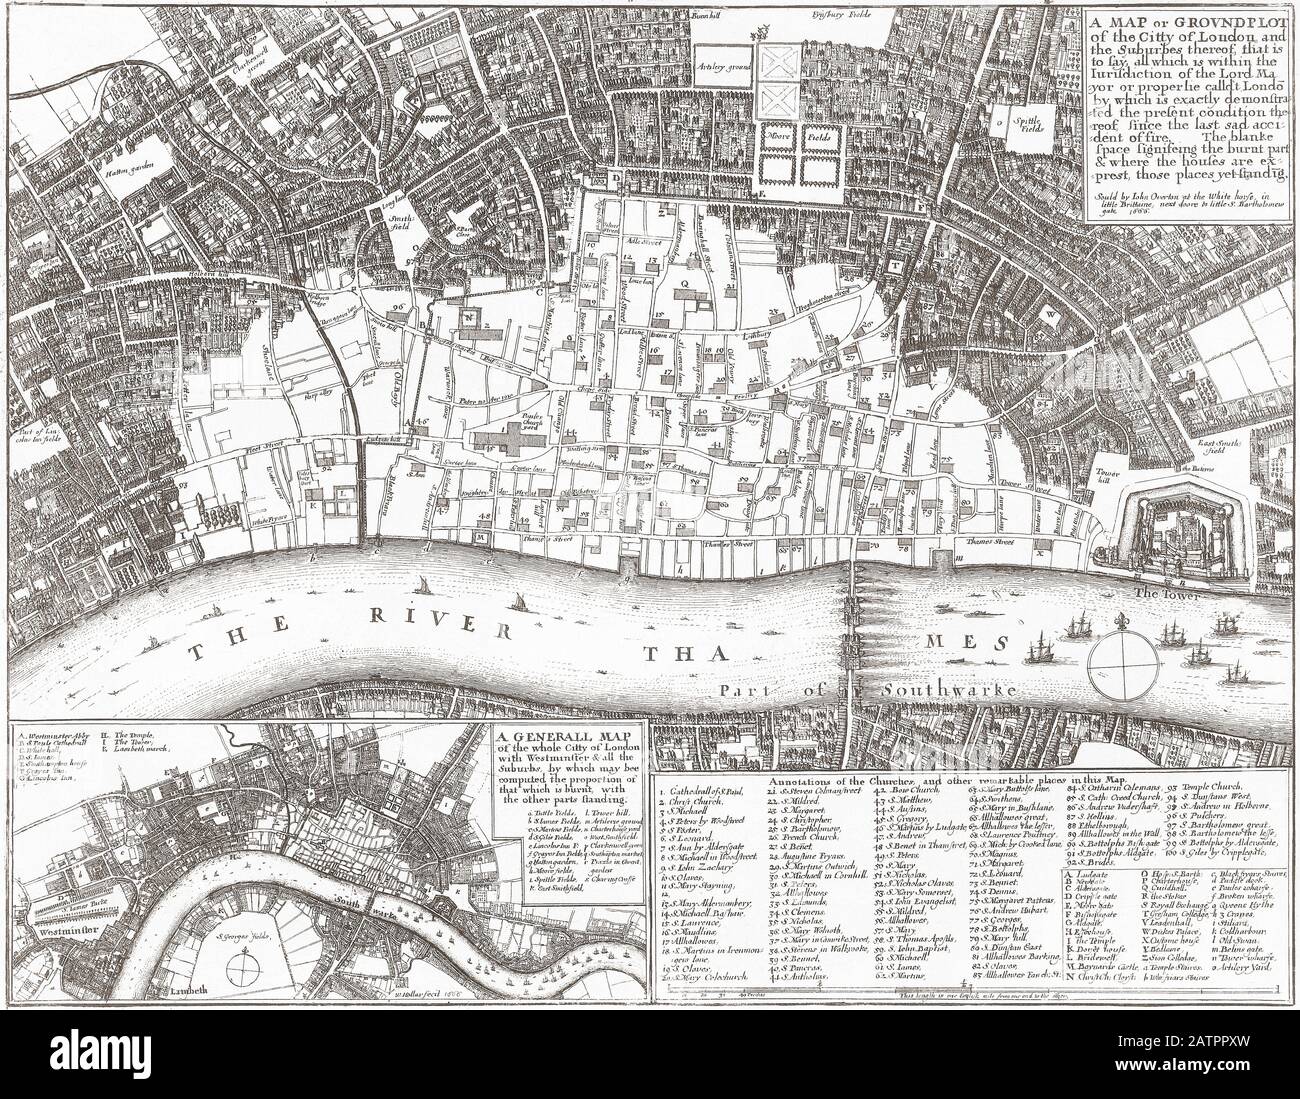 Karte mit dem Ausmaß der Schäden, die durch den Großen Brand von London, 1666 entstanden sind. Nach der Beschreibung in der rechten oberen Ecke der Karte zeigt der weiße Bereich, was verbrannt wurde und das Eigentum innerhalb des überlebten Bereichs. Stockfoto